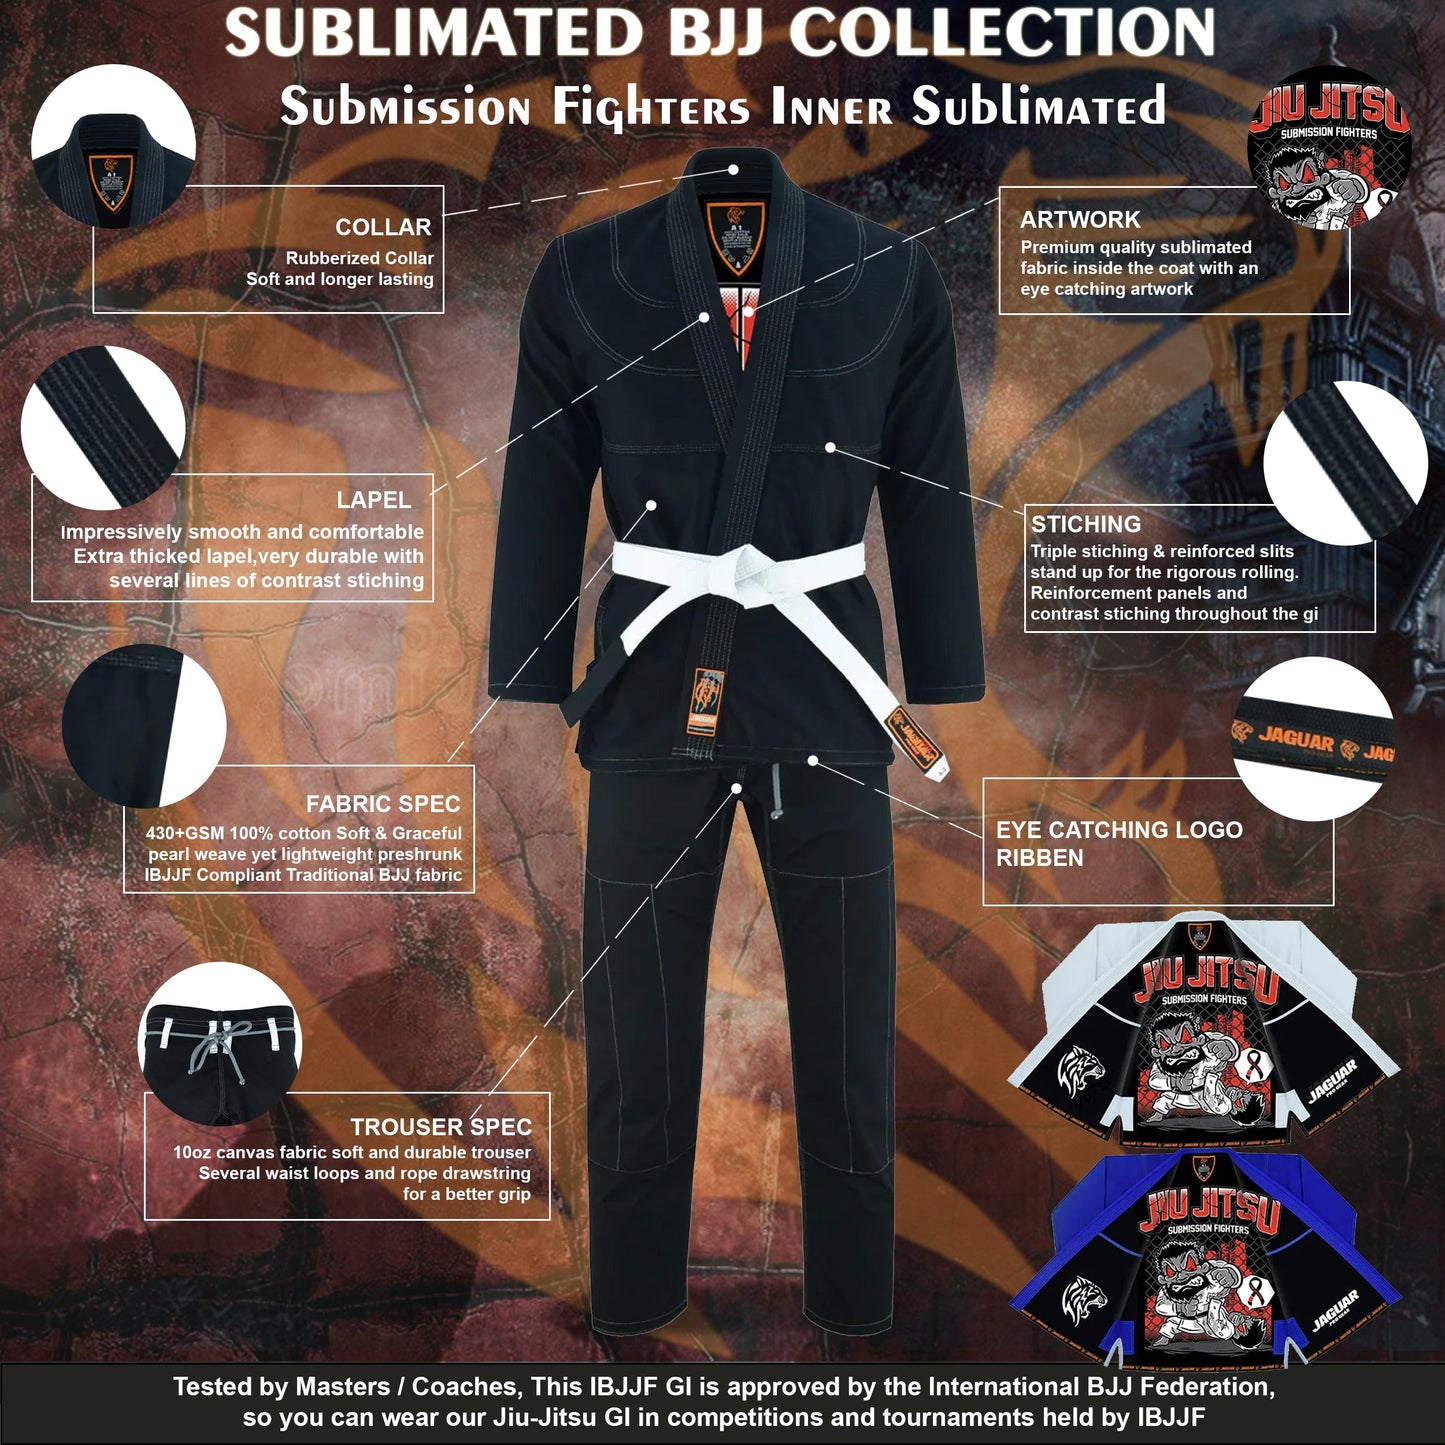 Jaguar Pro Gear – Submission Fighters Inner Sublimated - Pro Brazilian Jiu Jitsu BJJ Kimono Gi Uniform Unisex